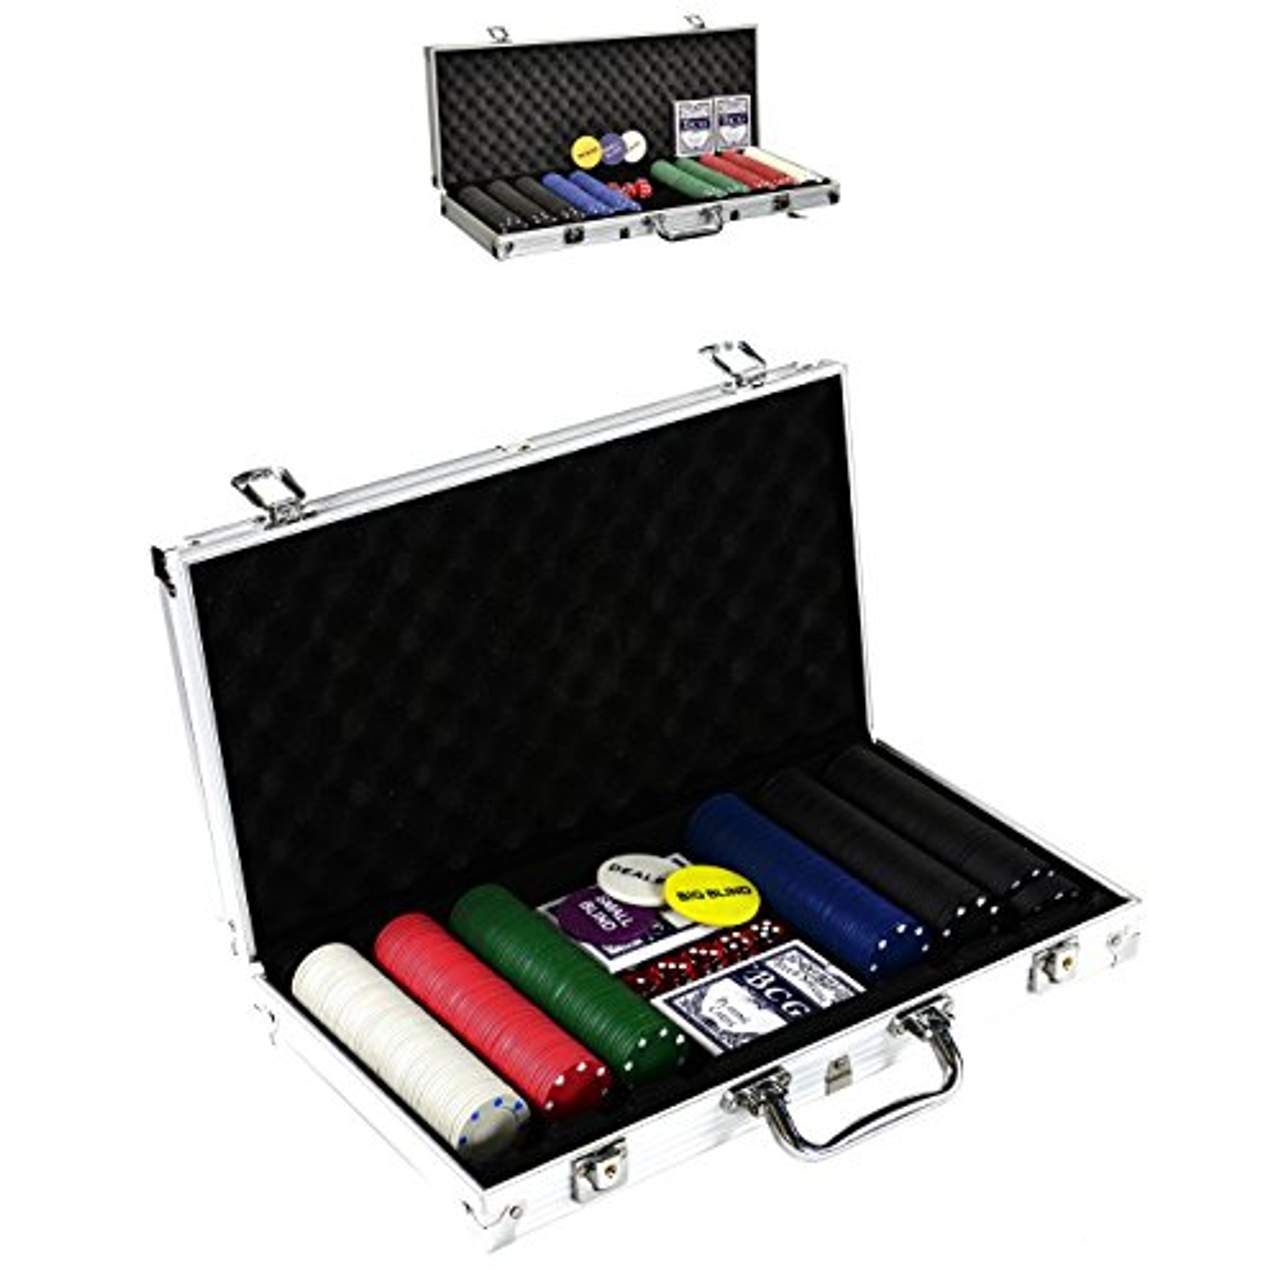 SONLEX Pokerkoffer mit 300 500 Pokerchips abschließbar Pokerkarten Zubehör Deluxe